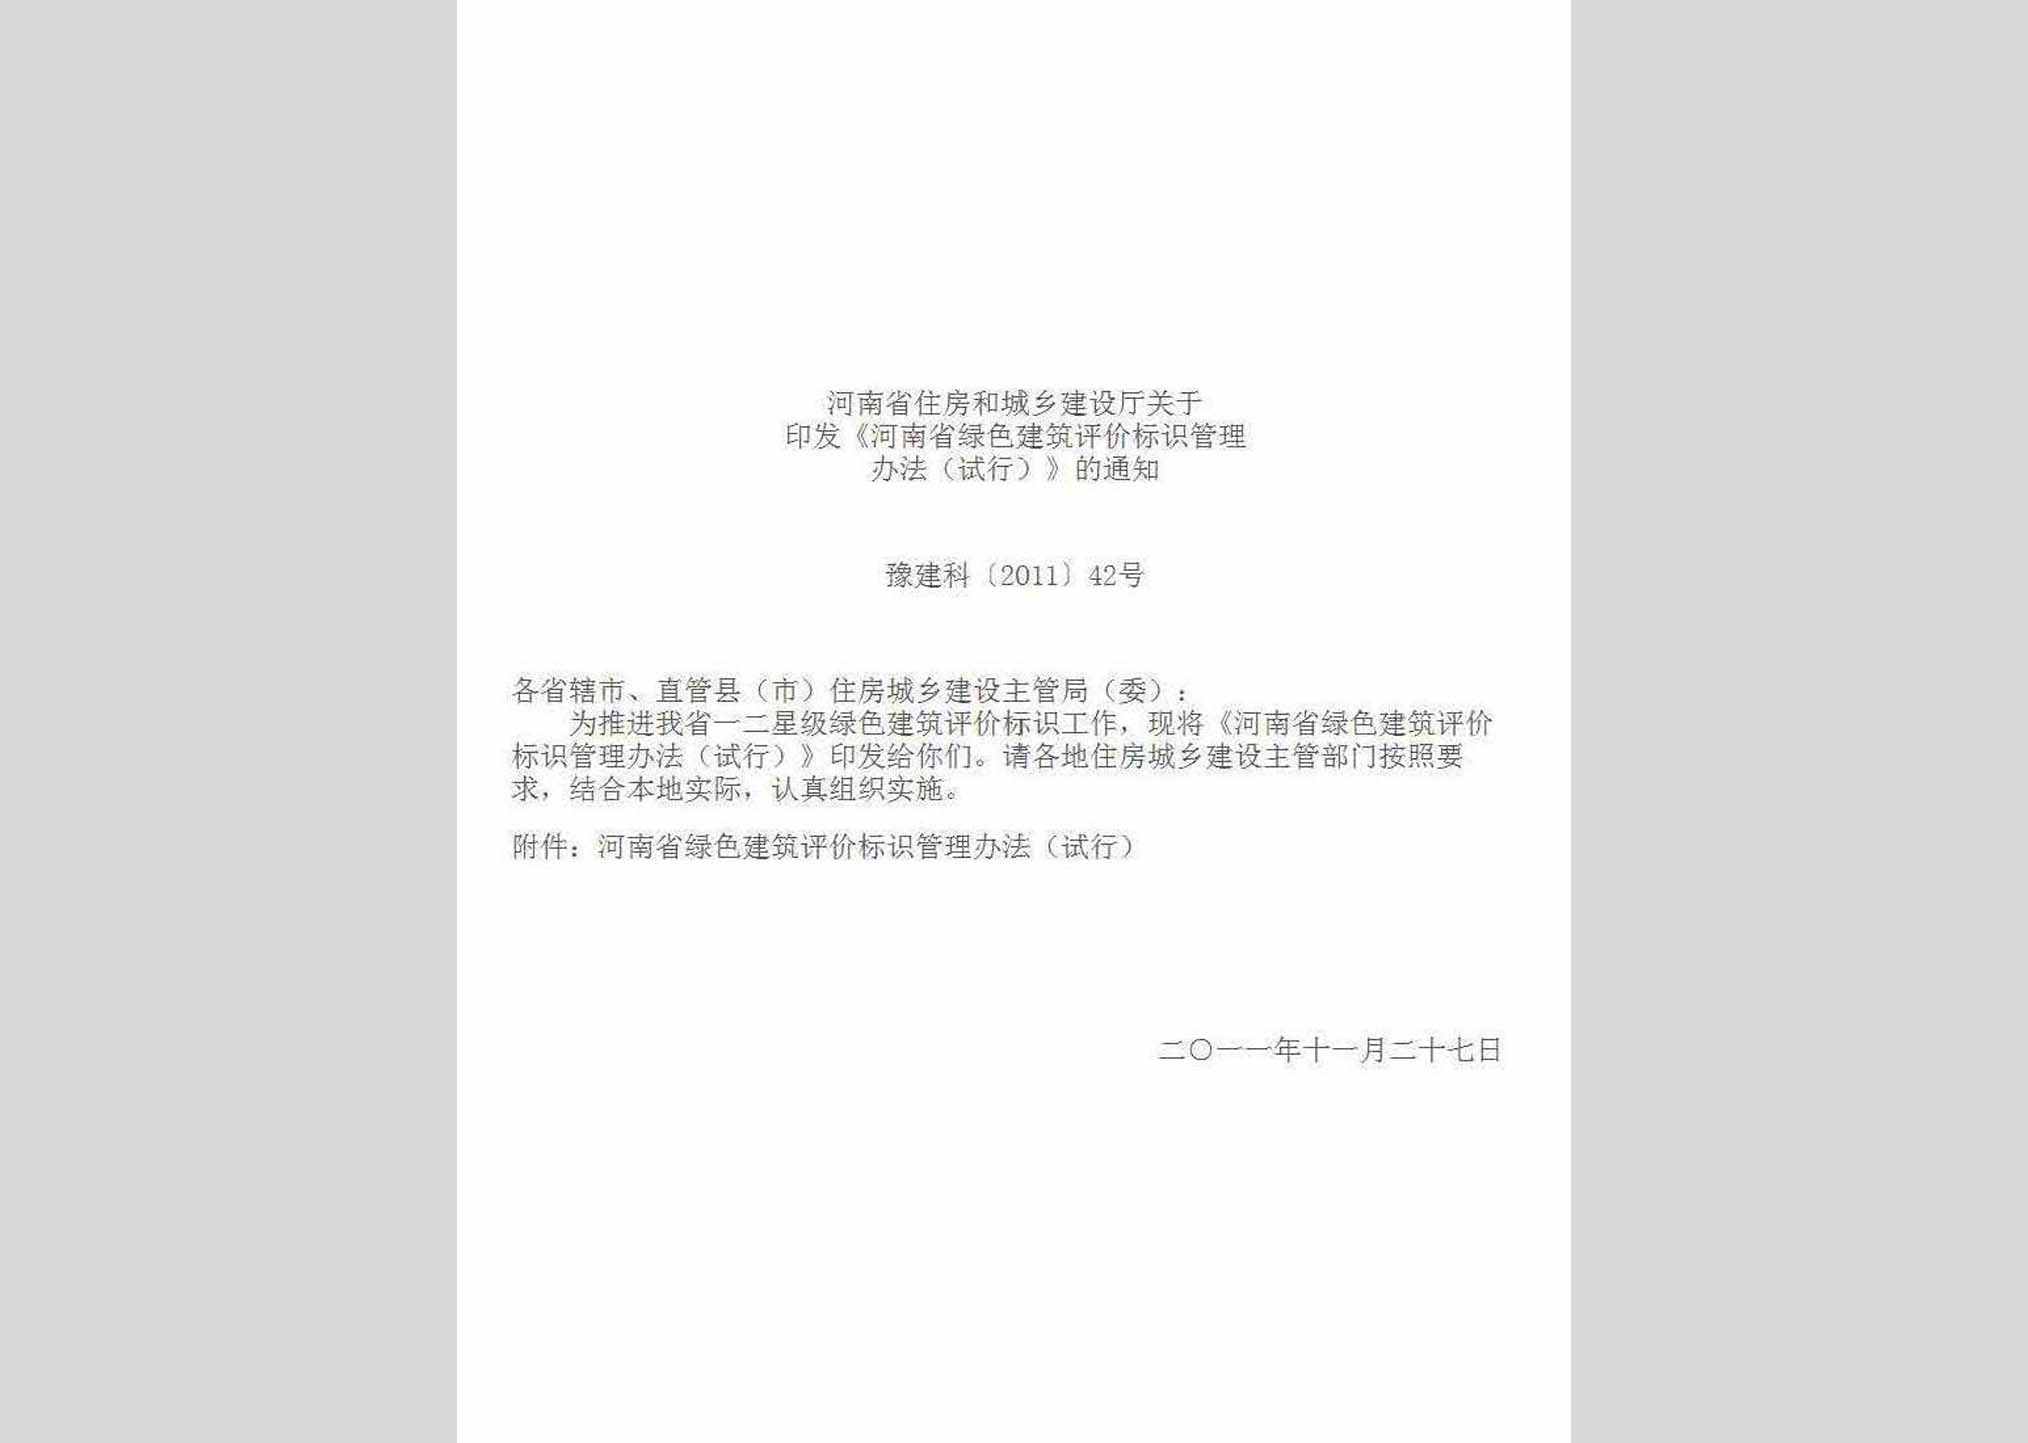 豫建科[2011]42号：河南省住房和城乡建设厅关于印发《河南省绿色建筑评价标识管理办法(试行)》的通知